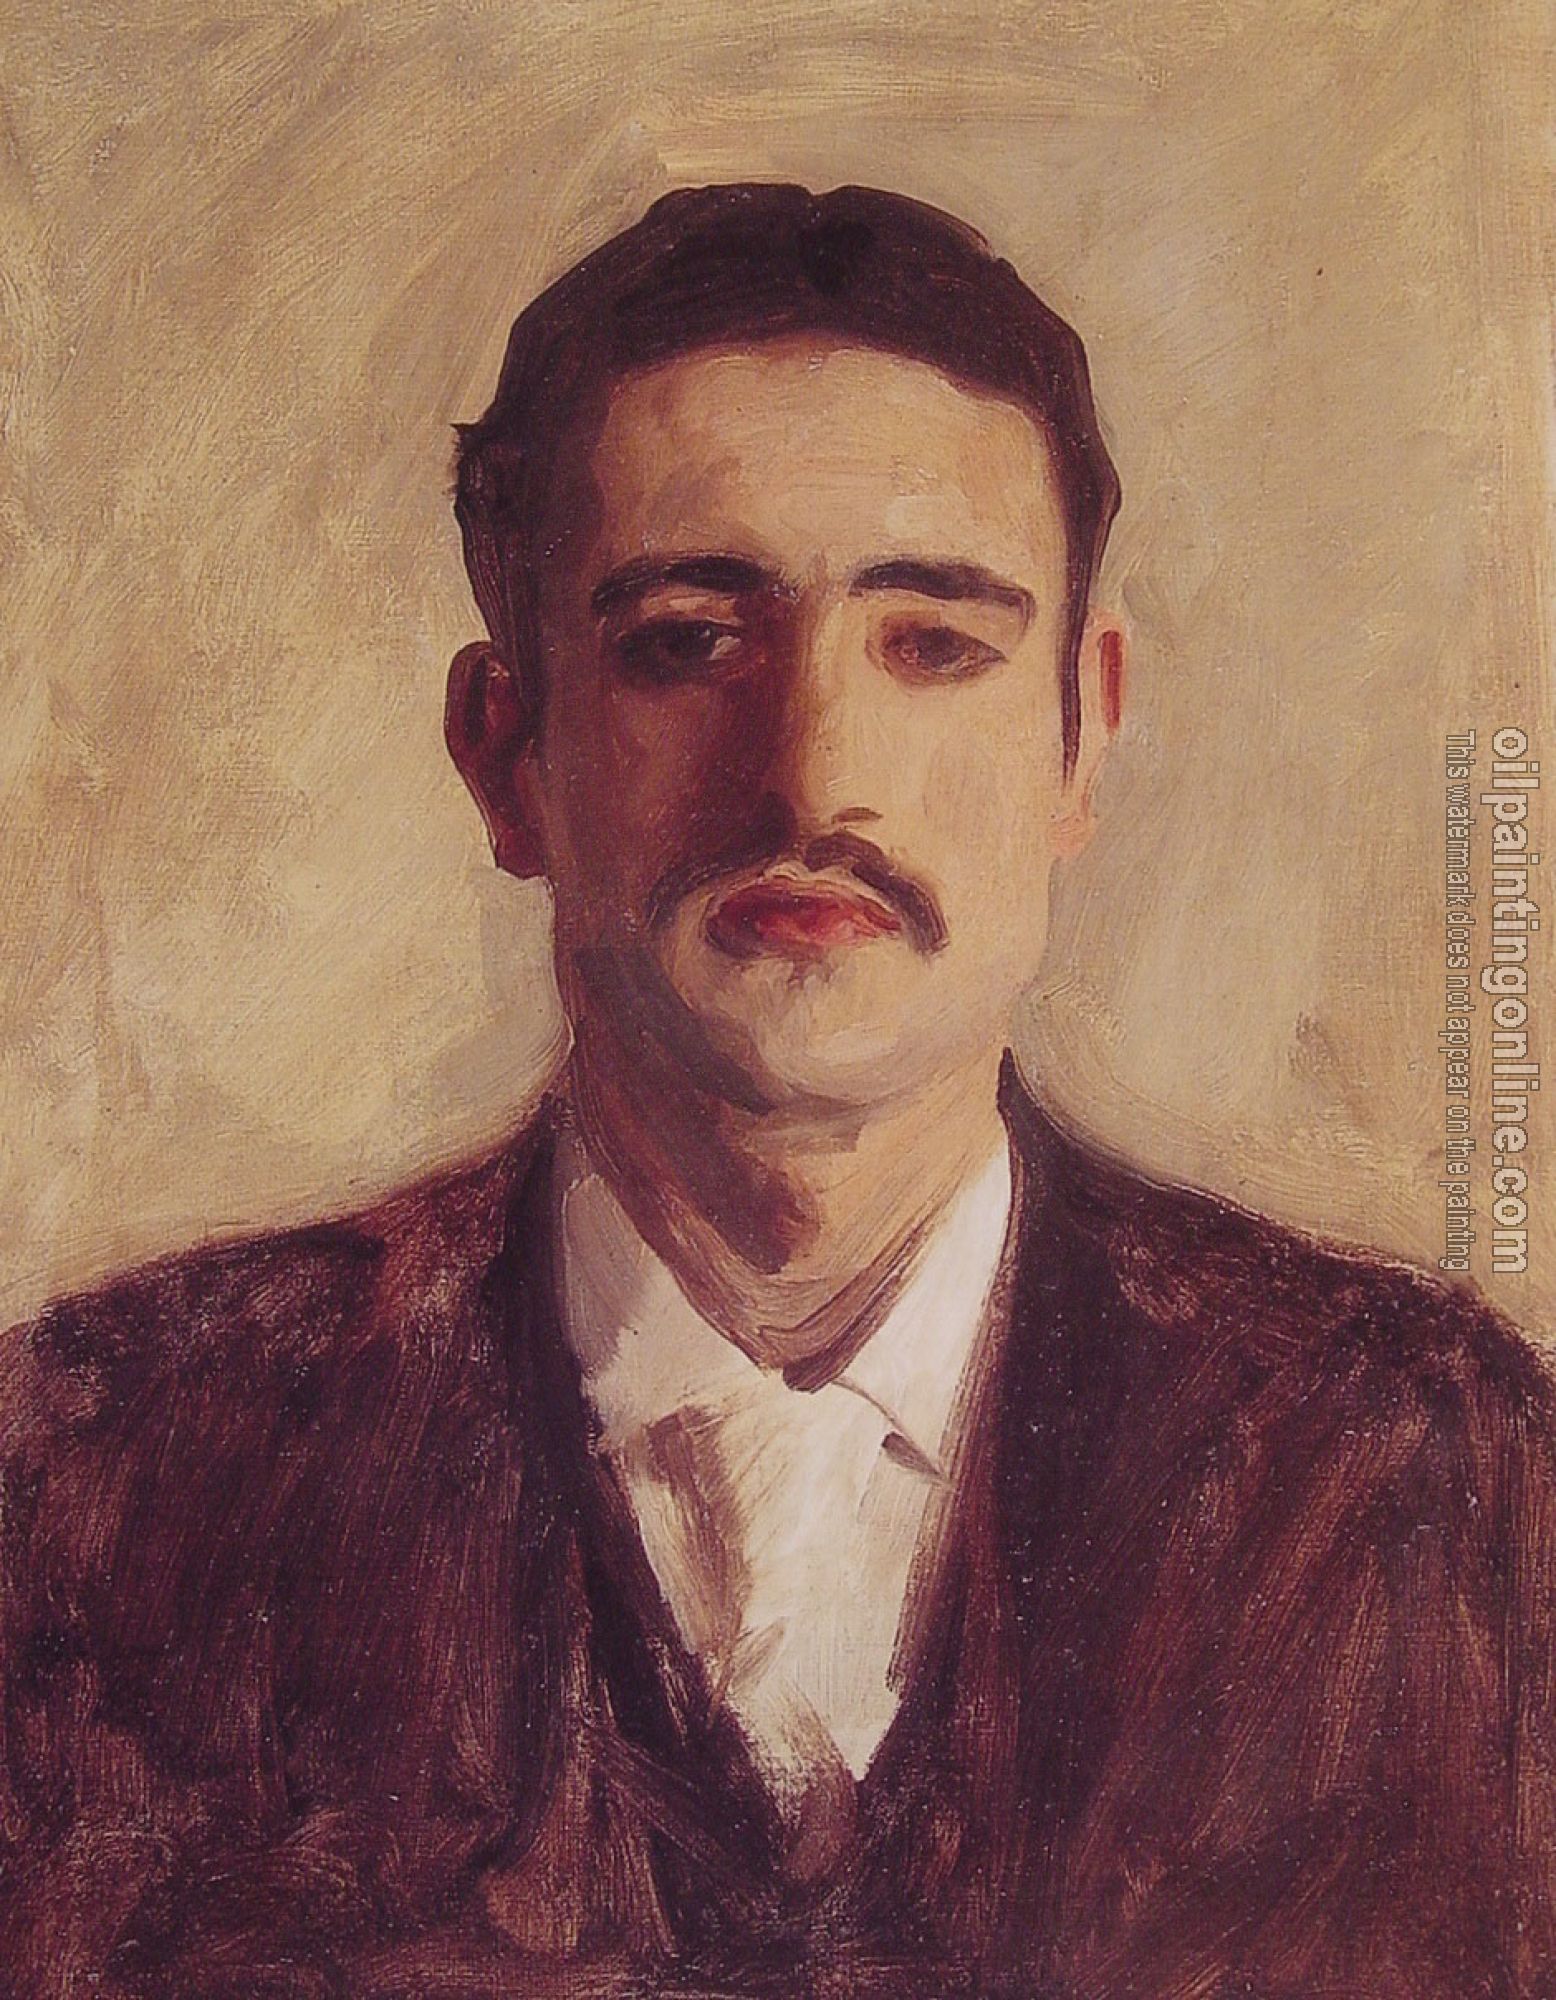 Sargent, John Singer - Portrait of a Man,Probably Nicola D'Inverno